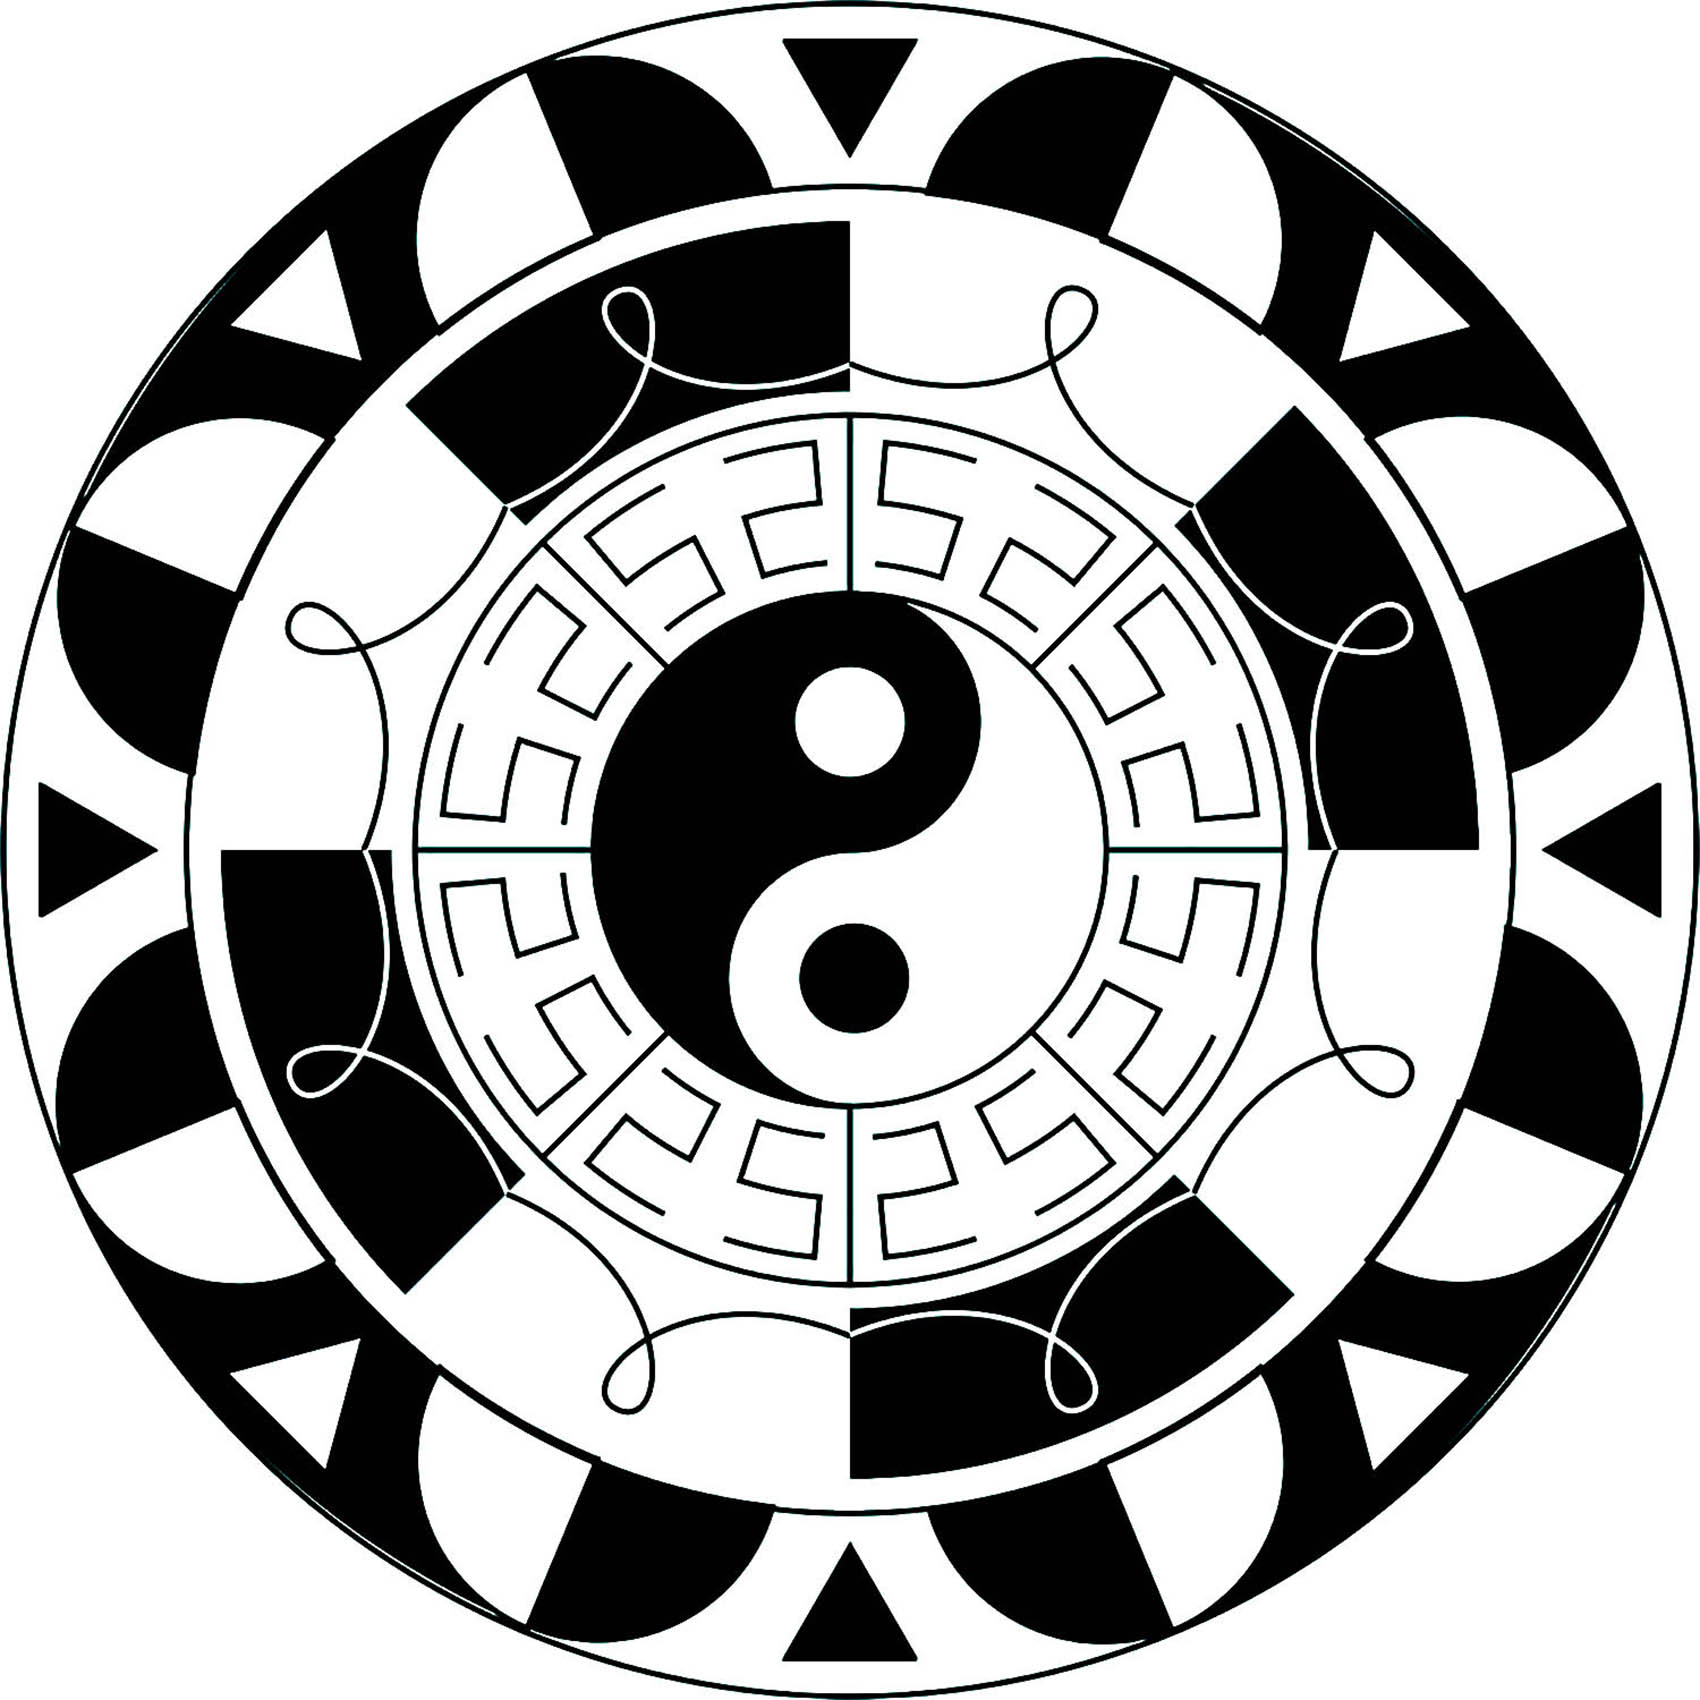 El famoso símbolo del Yin y el Yang integrado en un hermoso mandala en blanco y negro